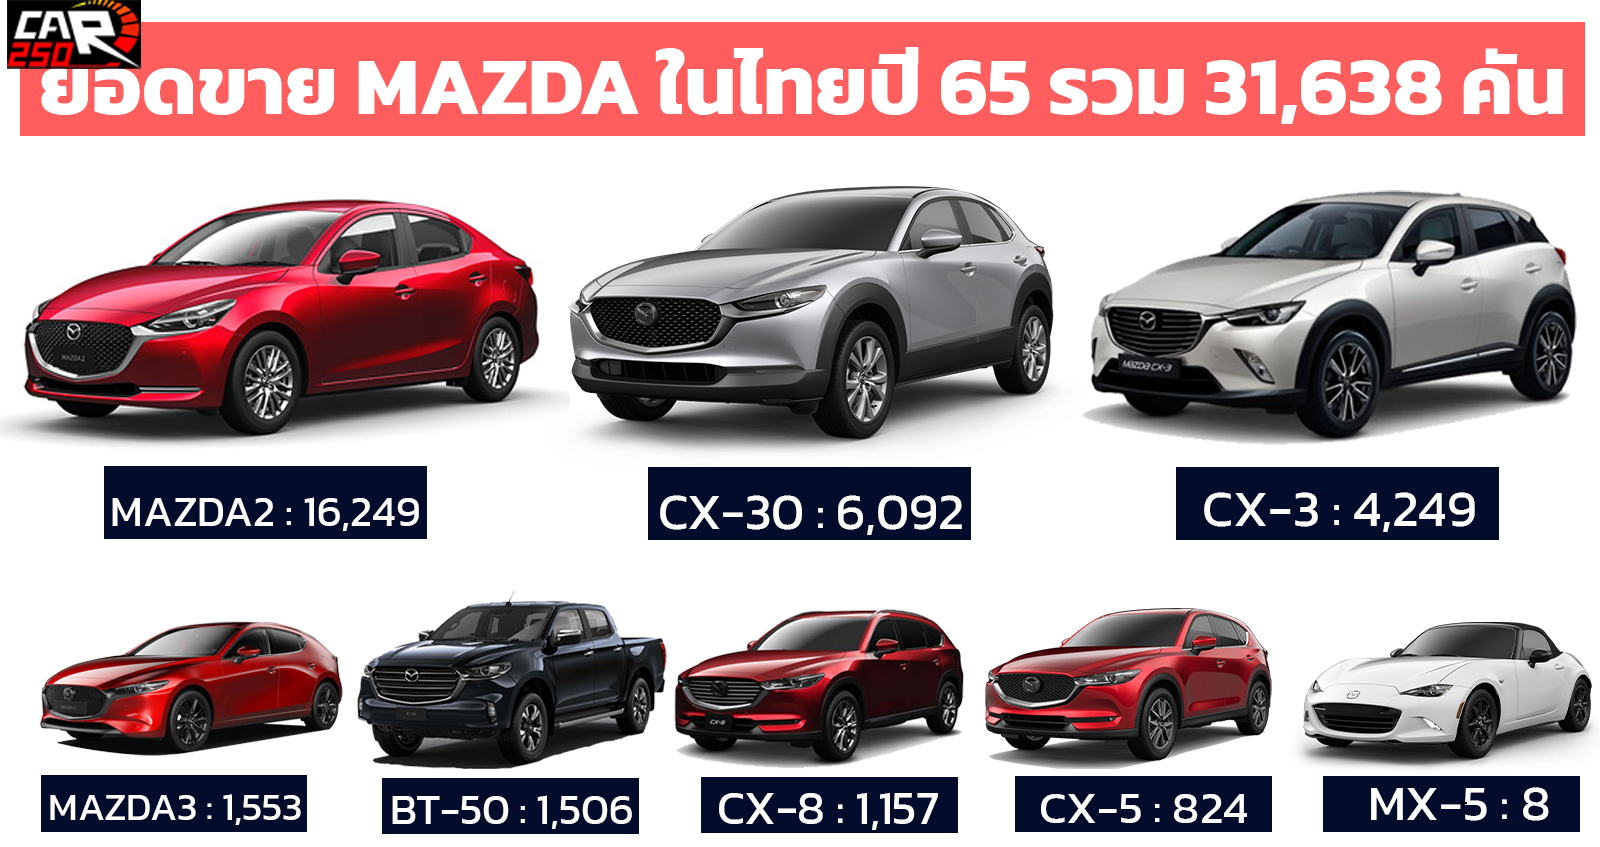 MAZDA ไทยเผยยอดขายรถยนต์ปี 2565 รวม 31,638 คัน